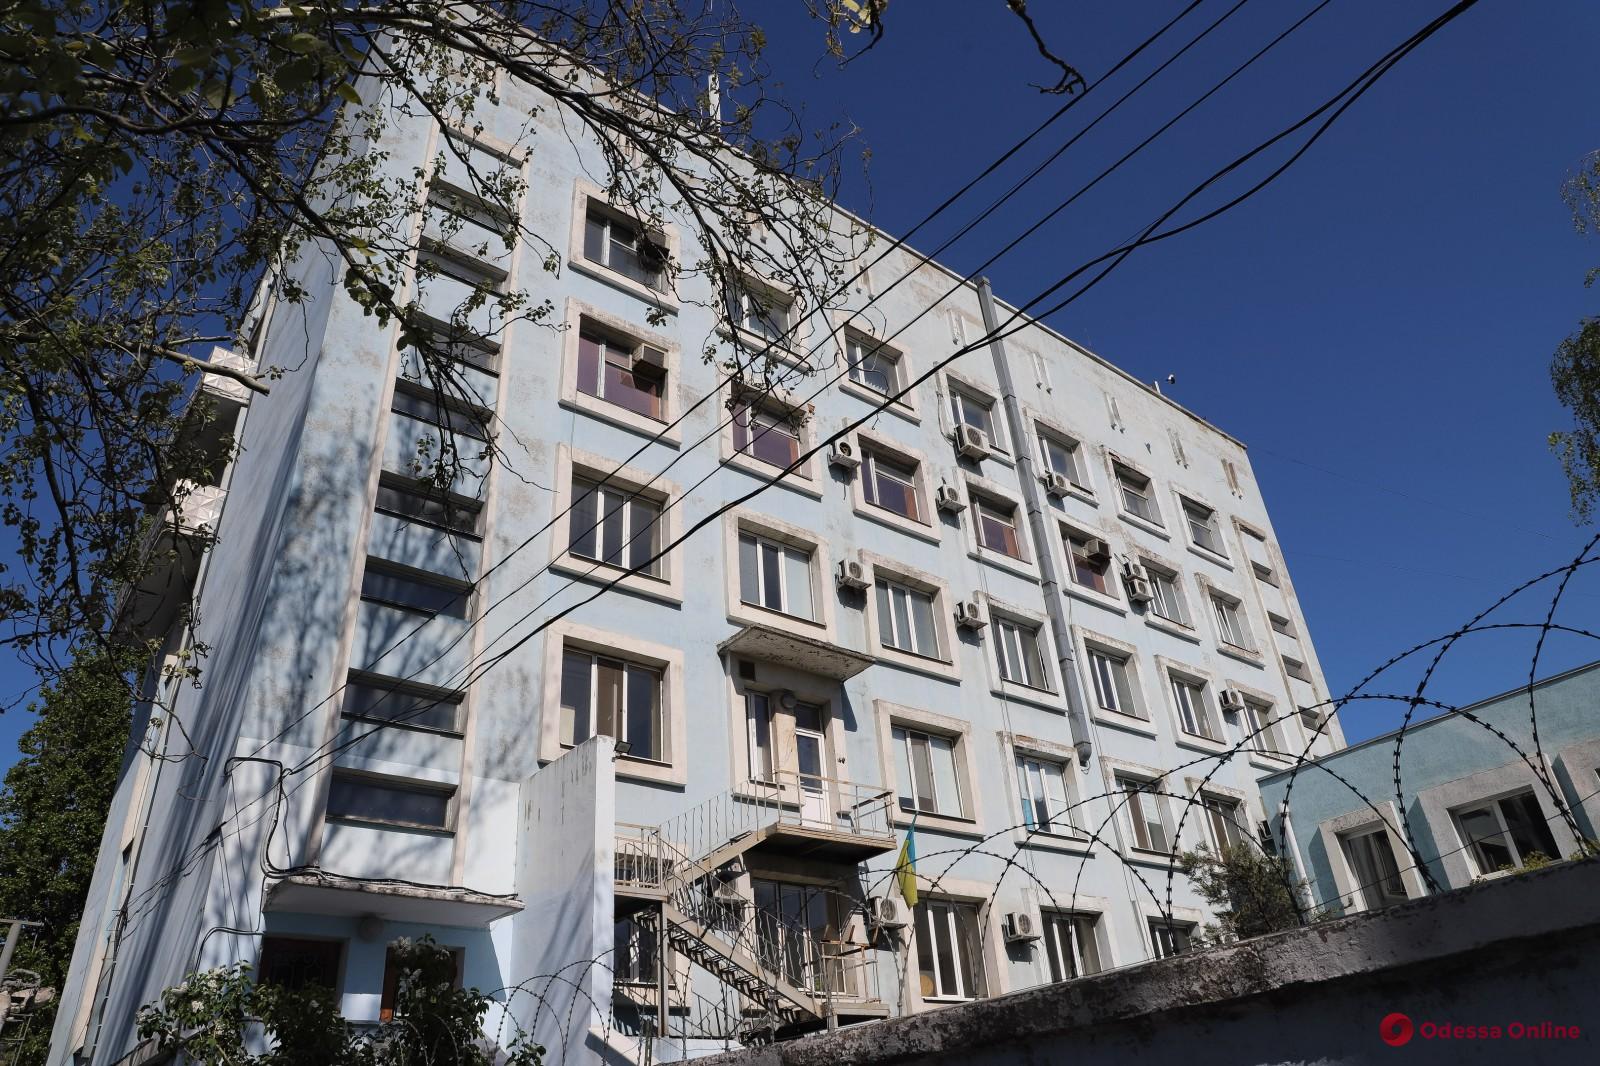 Нехватка средств защиты и старое оборудование: мэр Одессы возмущен условиями работы лаборатории противочумного НИИ (фото, видео)